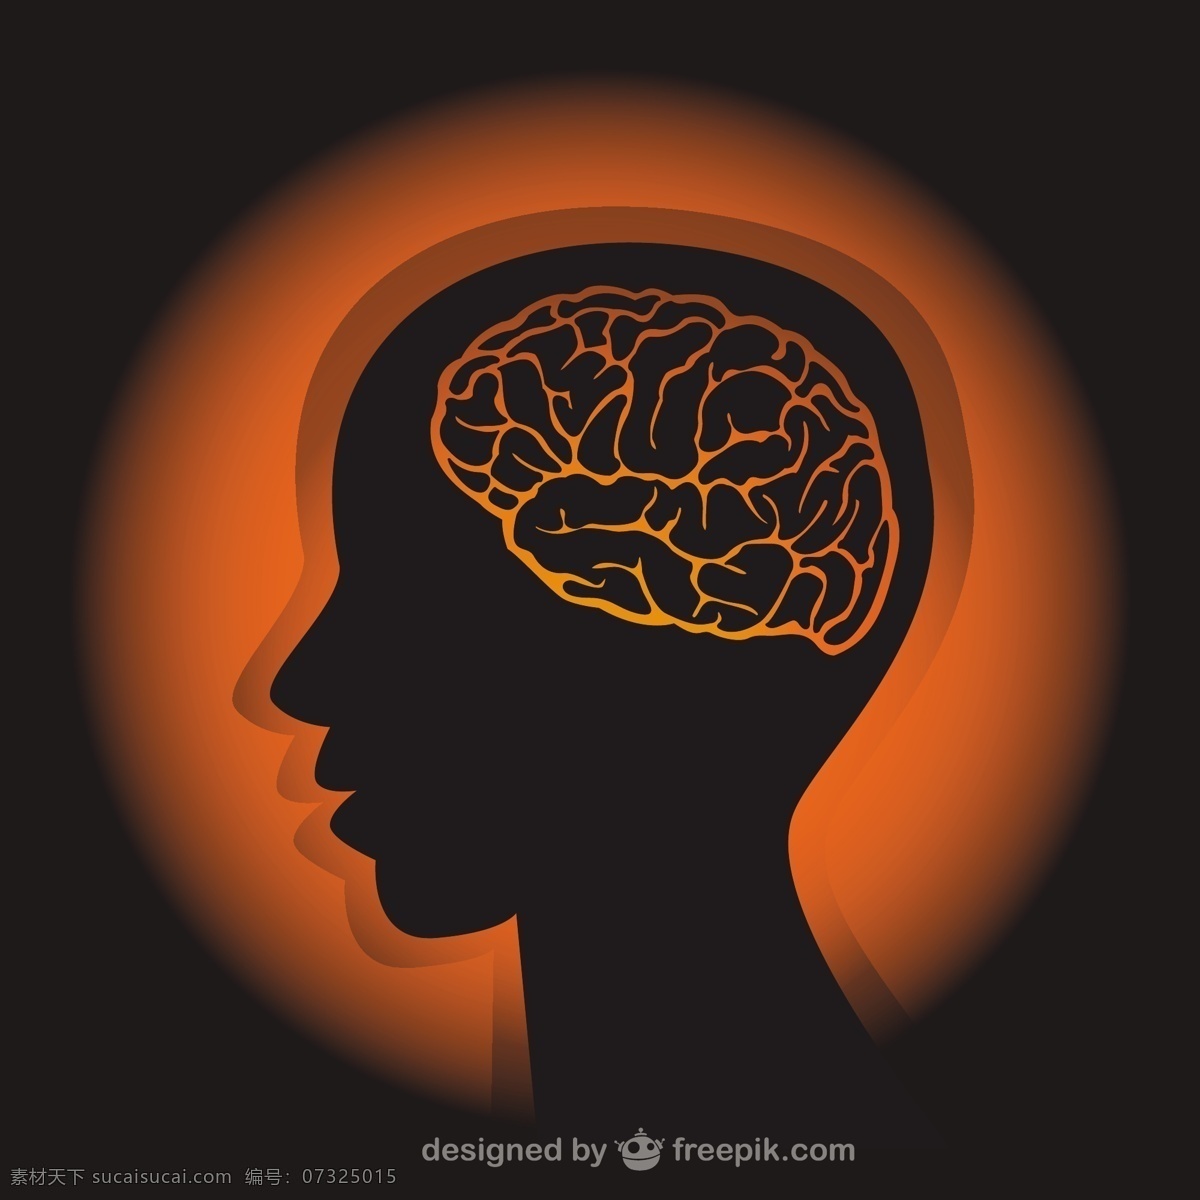 人体轮廓图 背景 脑 医学 模板 健康 人脸 科学 壁纸 轮廓 布局 人 头 外形 思维 插图 黑色